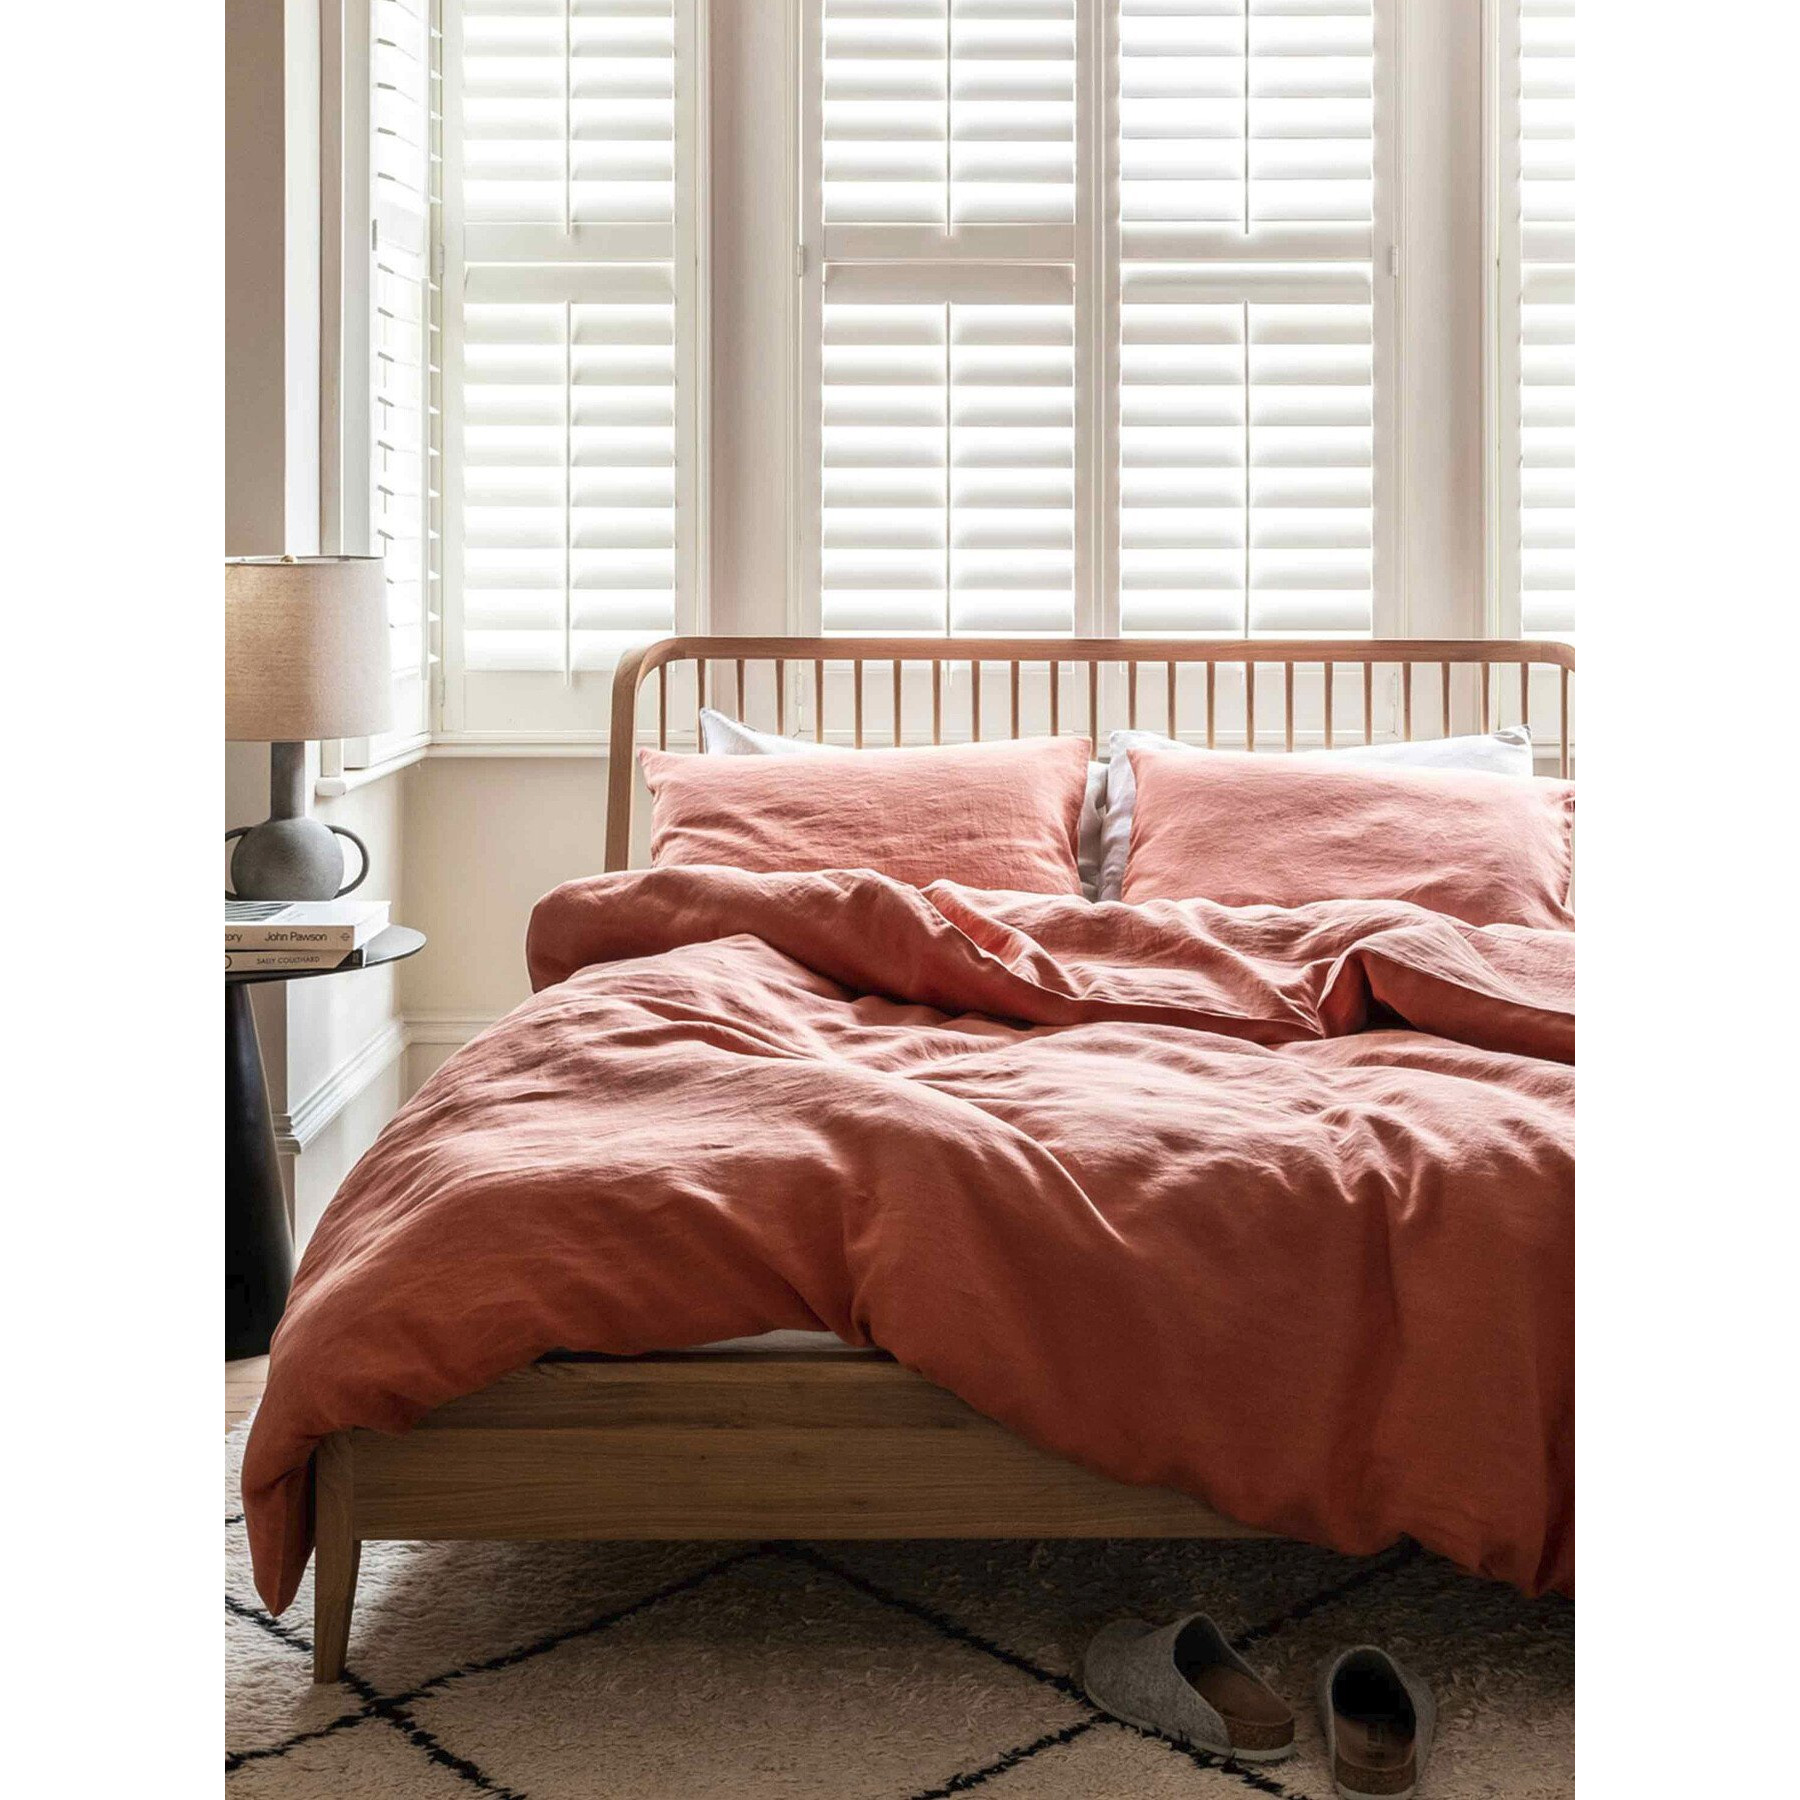 Piglet in Bed Linen Flat Sheet - Size Super King Orange - image 1